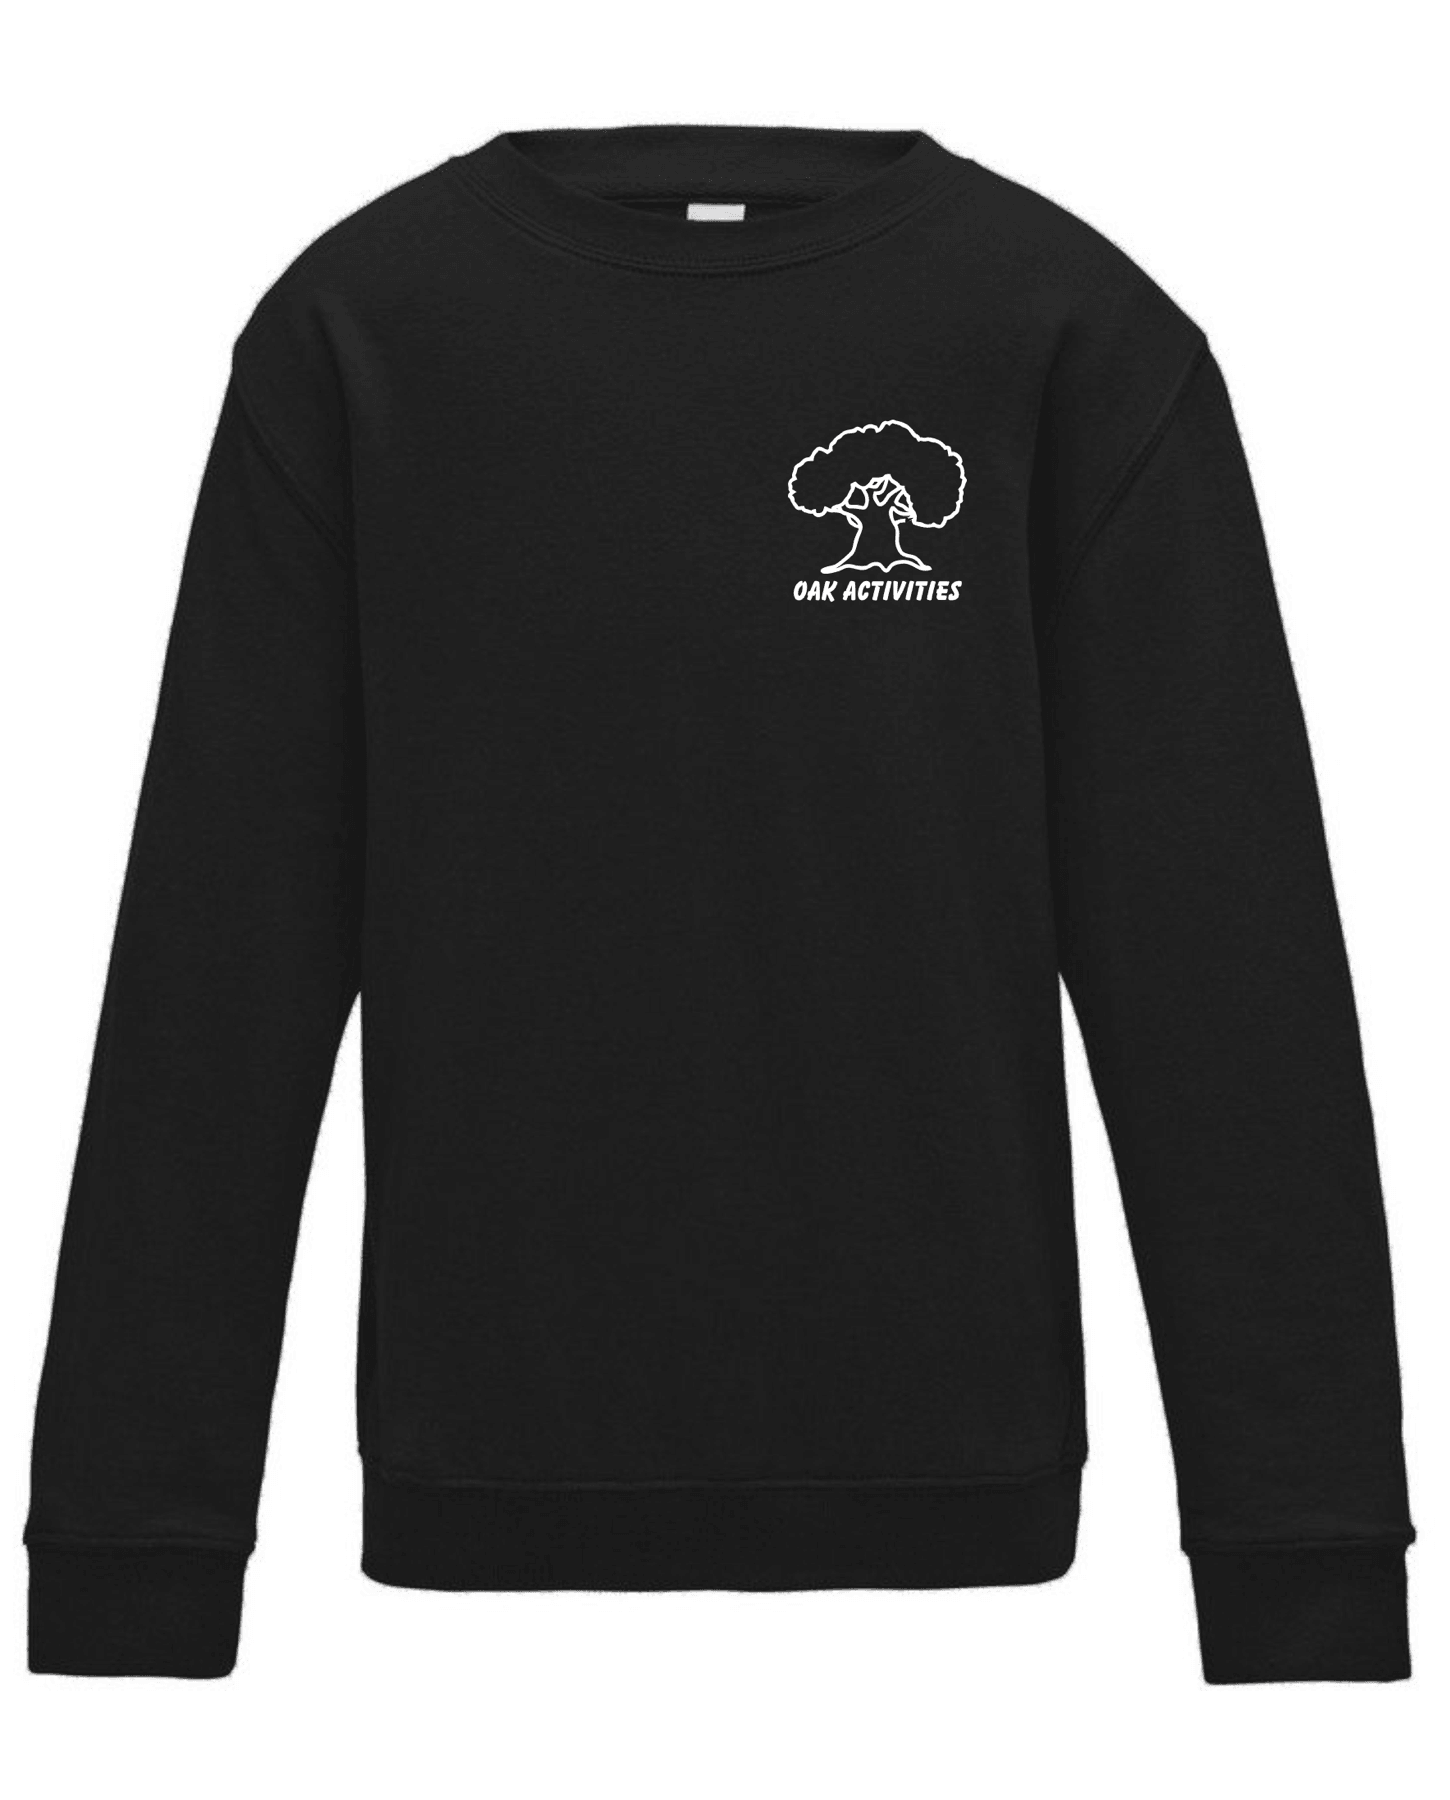 Oak Activities – Kids Sweatshirt (Black)